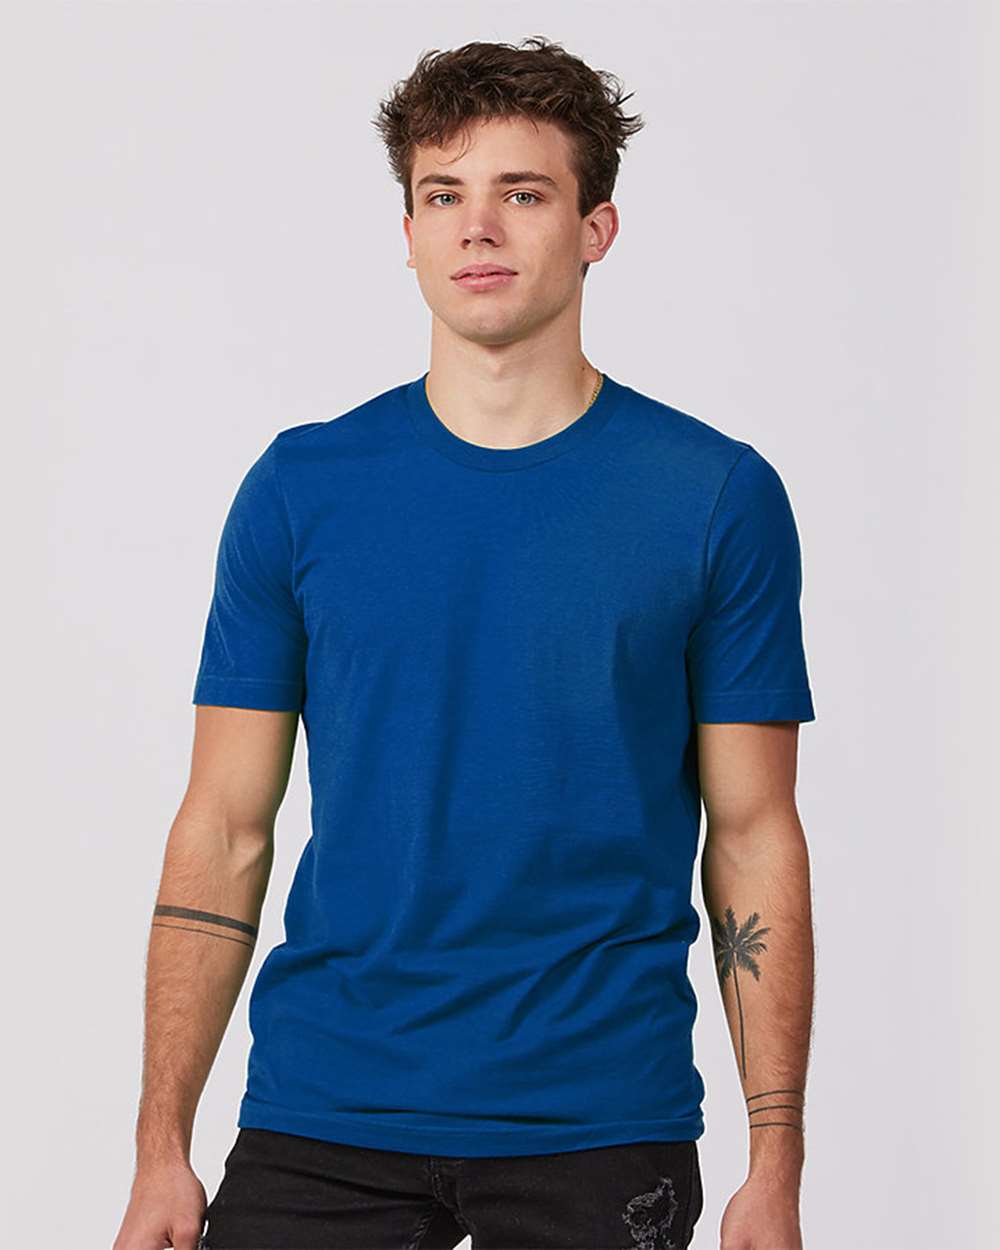 Tultex 502 Premium Cotton T-Shirt - Royal - HIT a Double